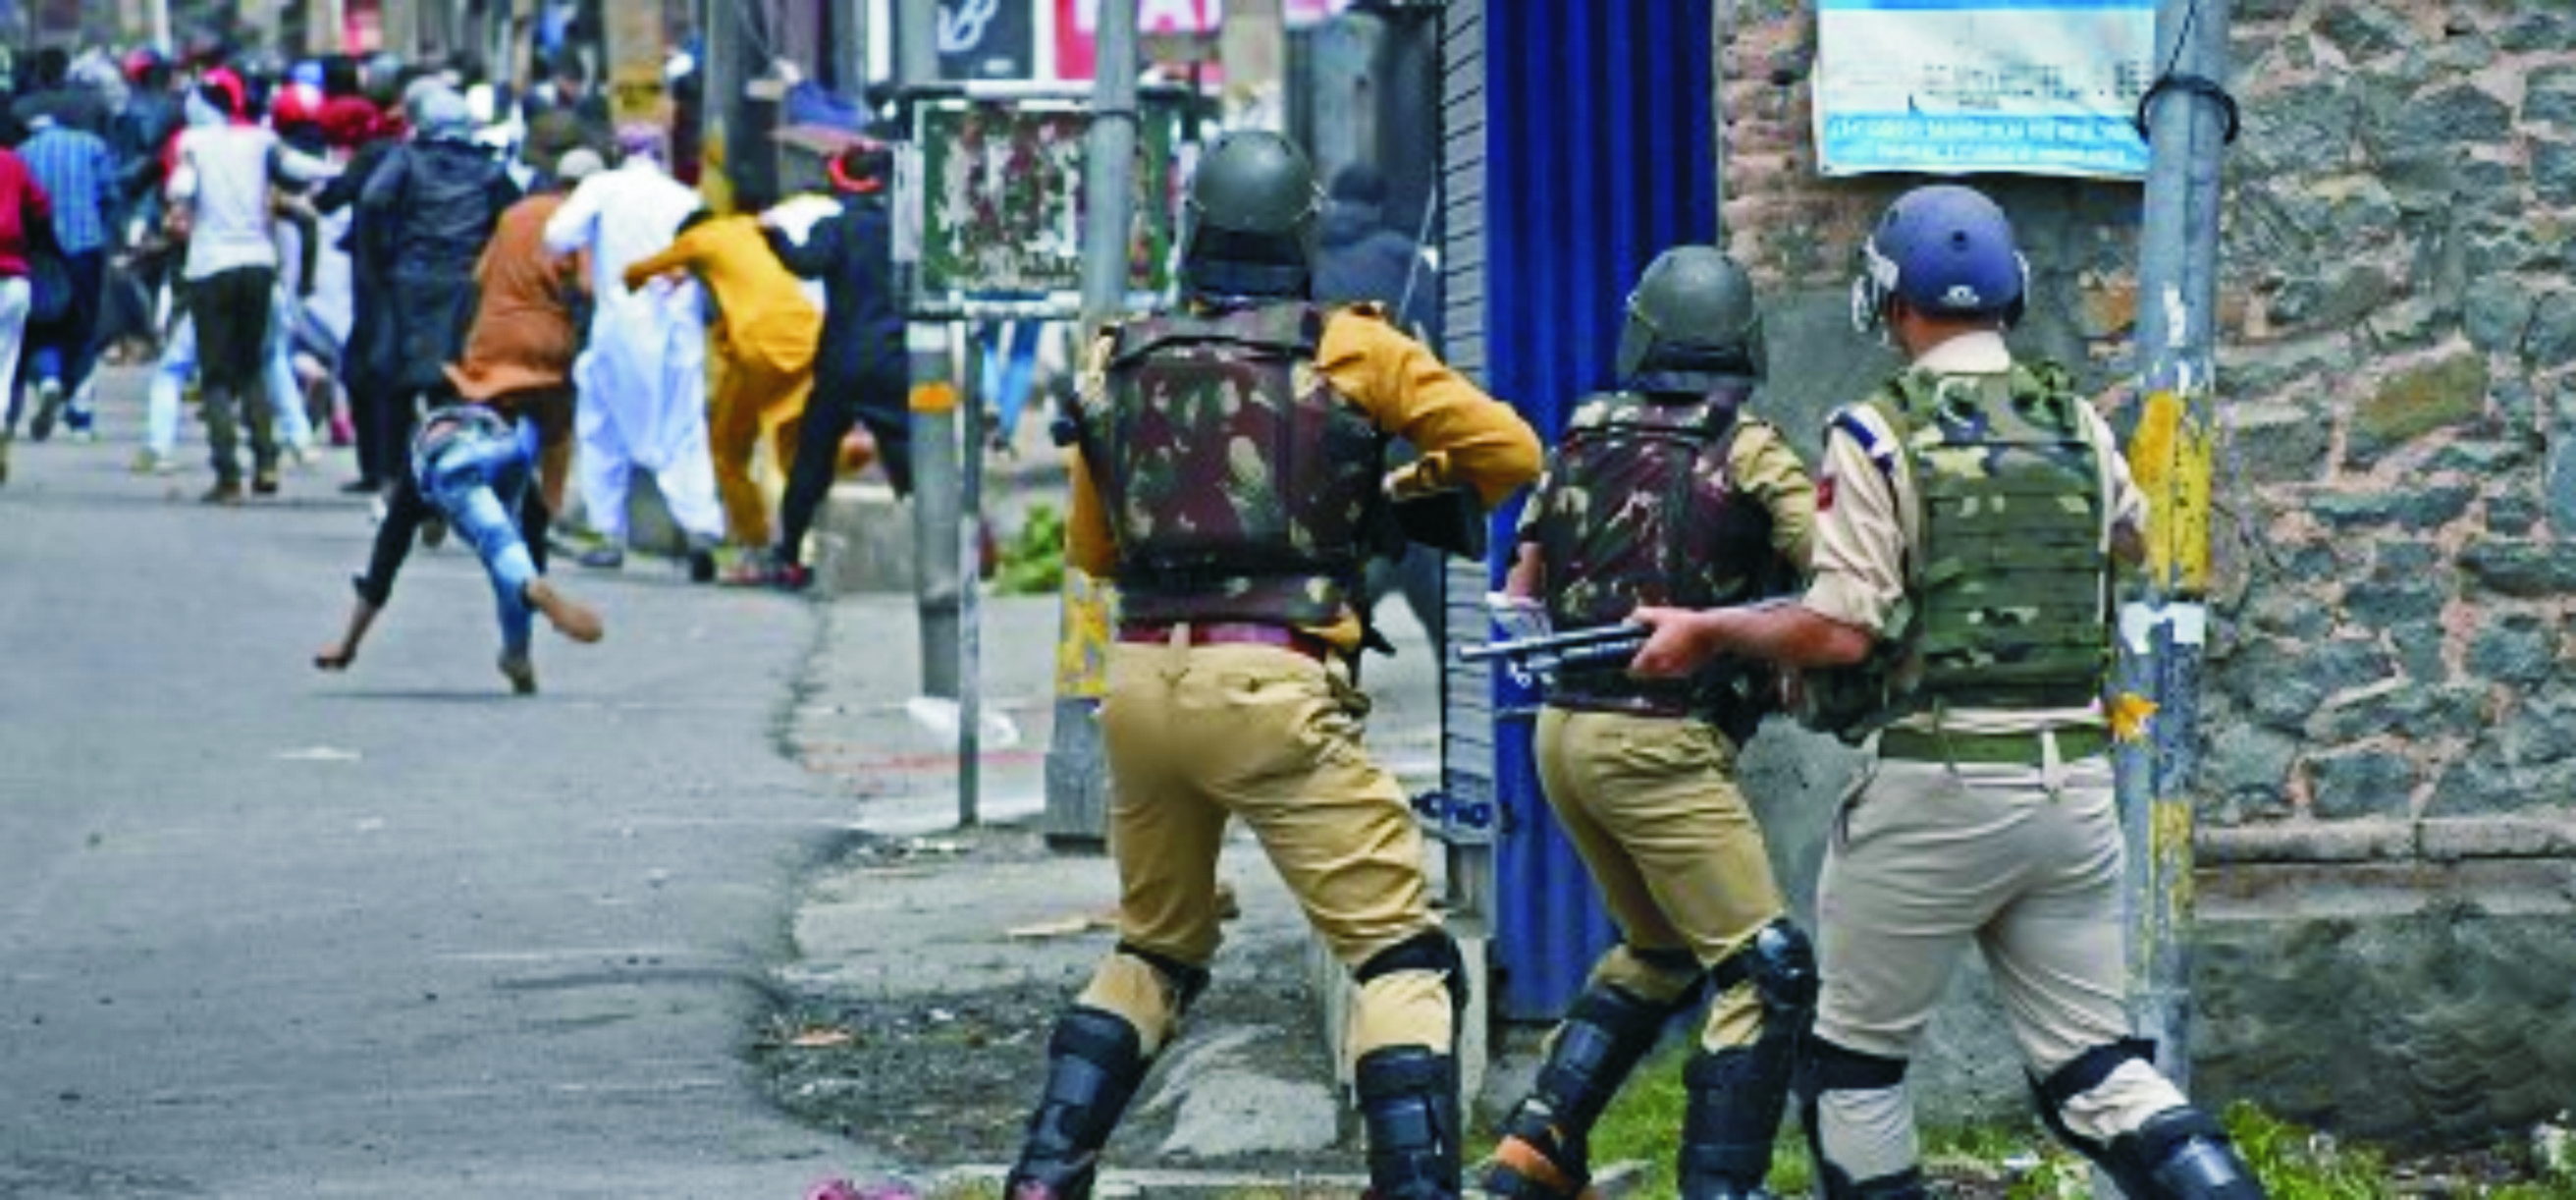 जम्मू-कश्मीर विवादः संवैधानिक और सैनिक समाधान की विफलता